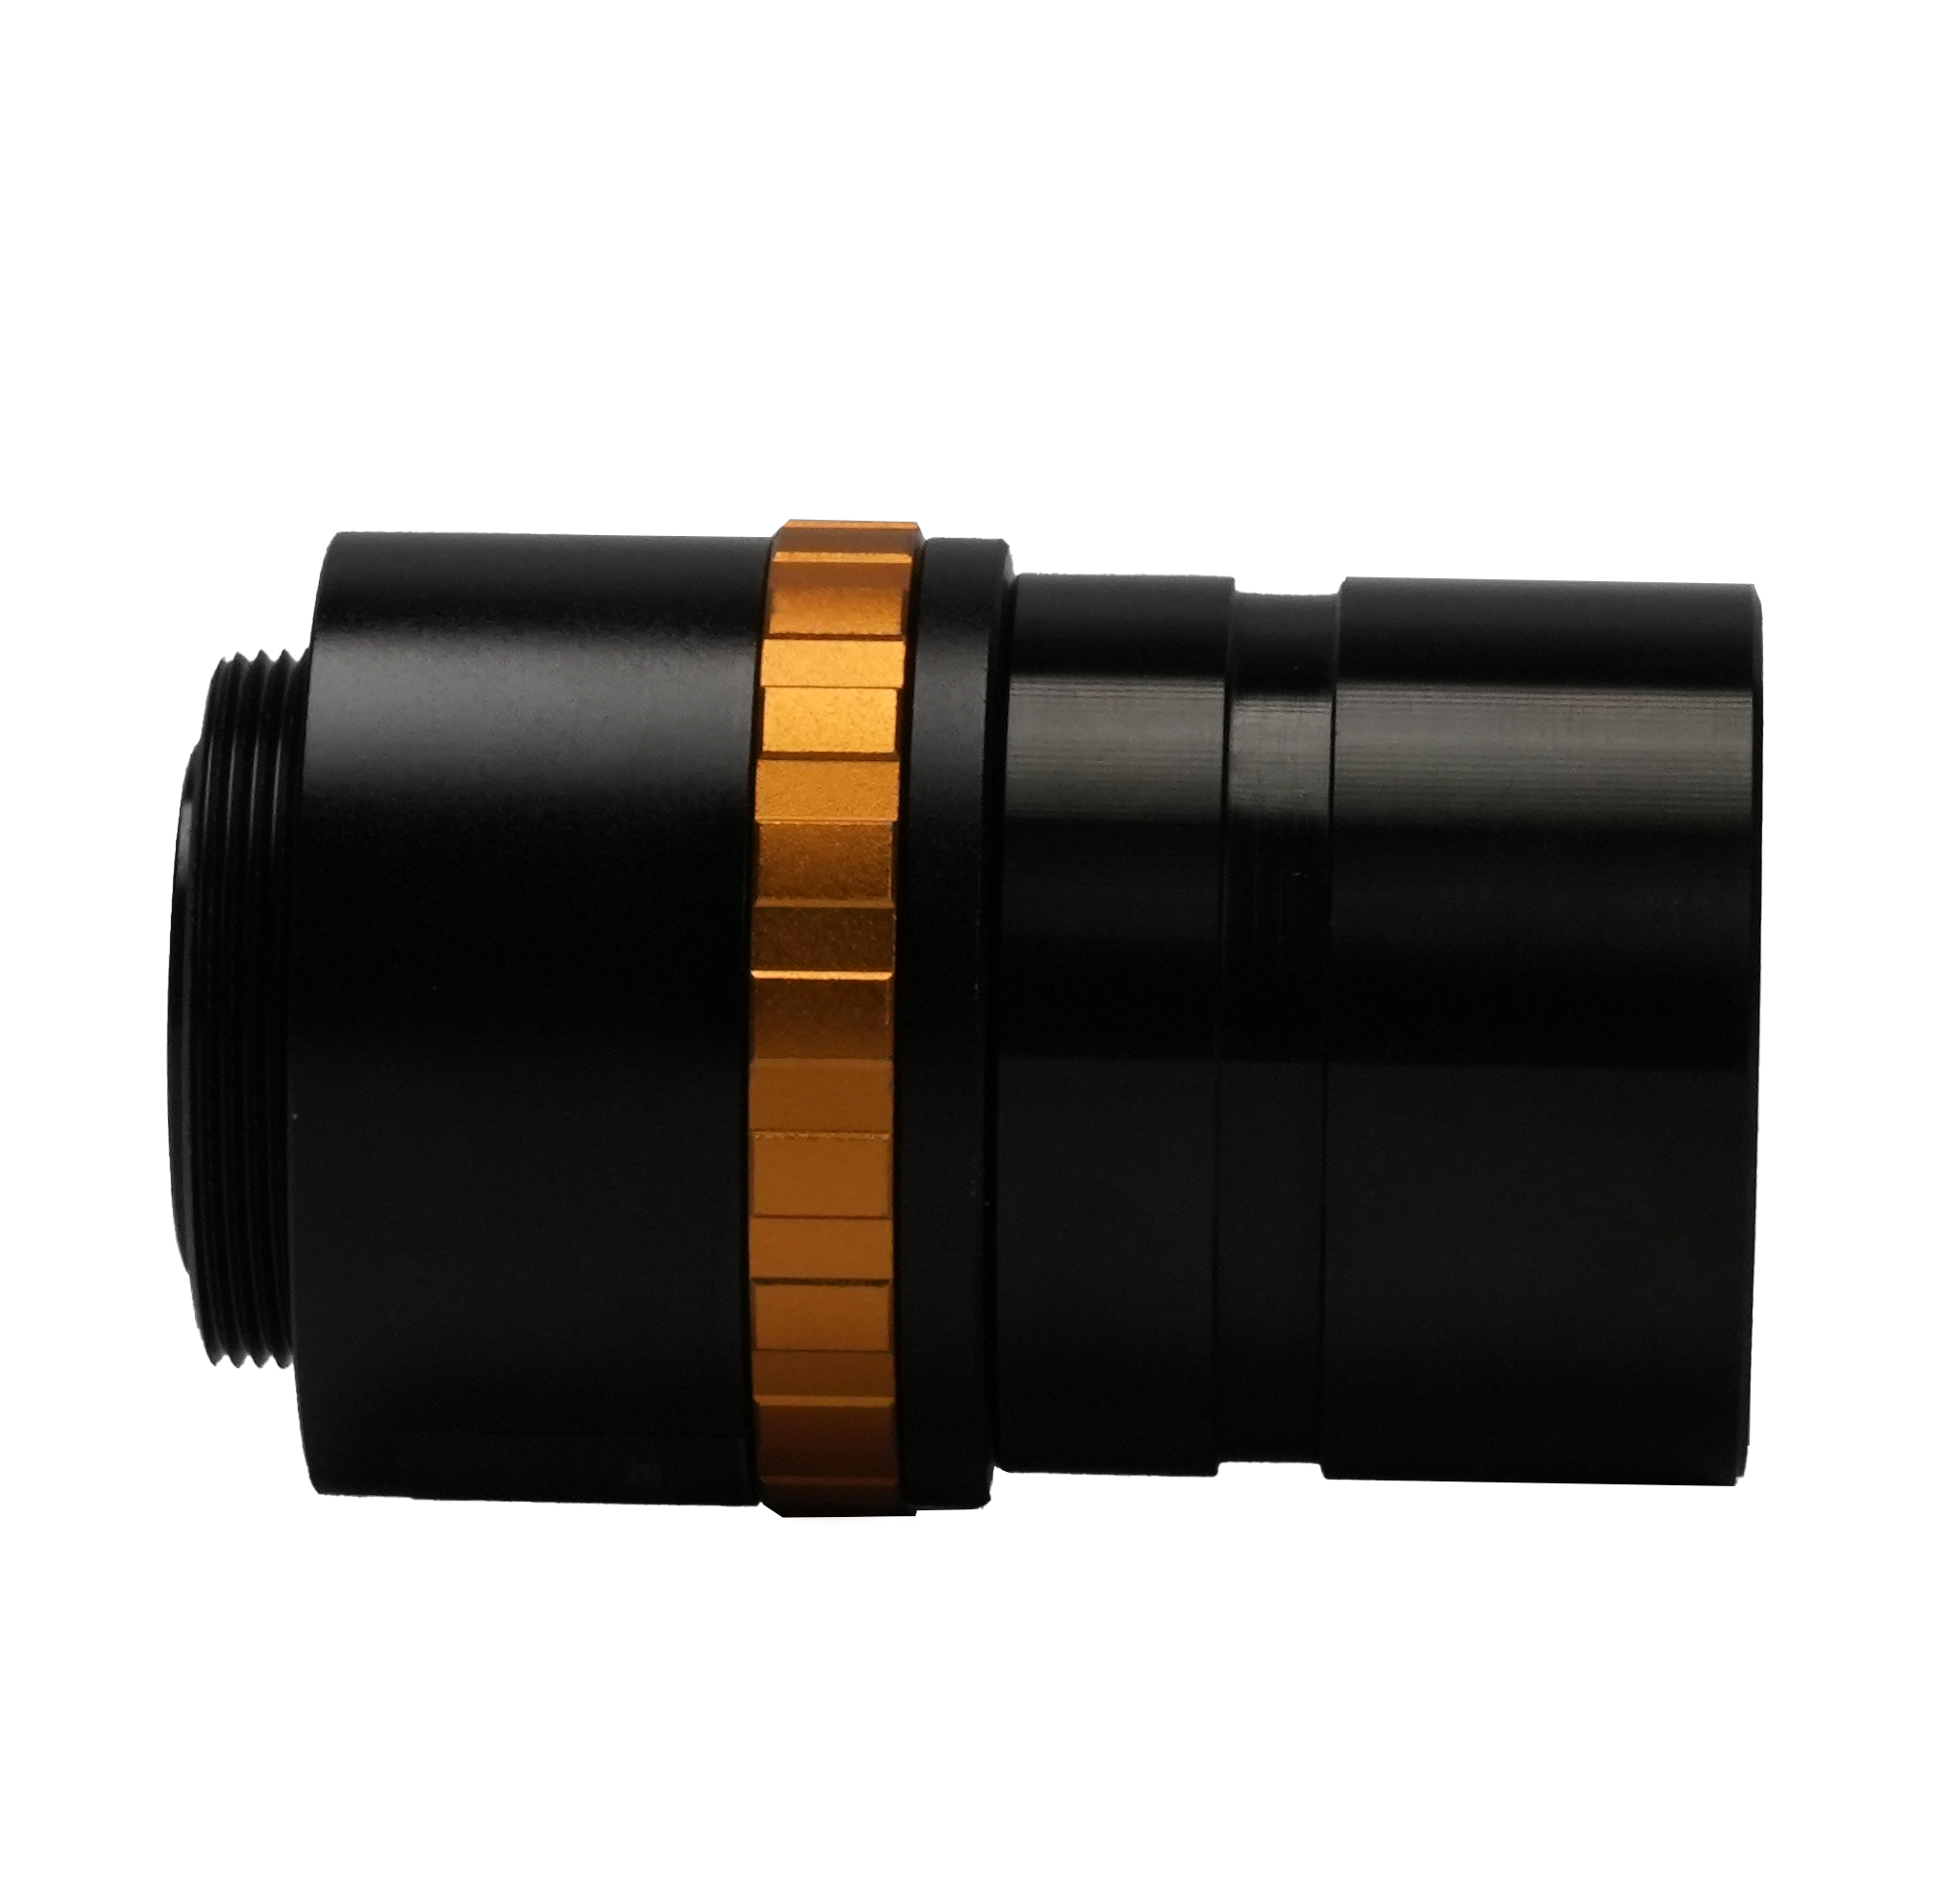 BCN3A-0.5x Adaptador d'ocular de microscopi ajustable de 31,75 mm